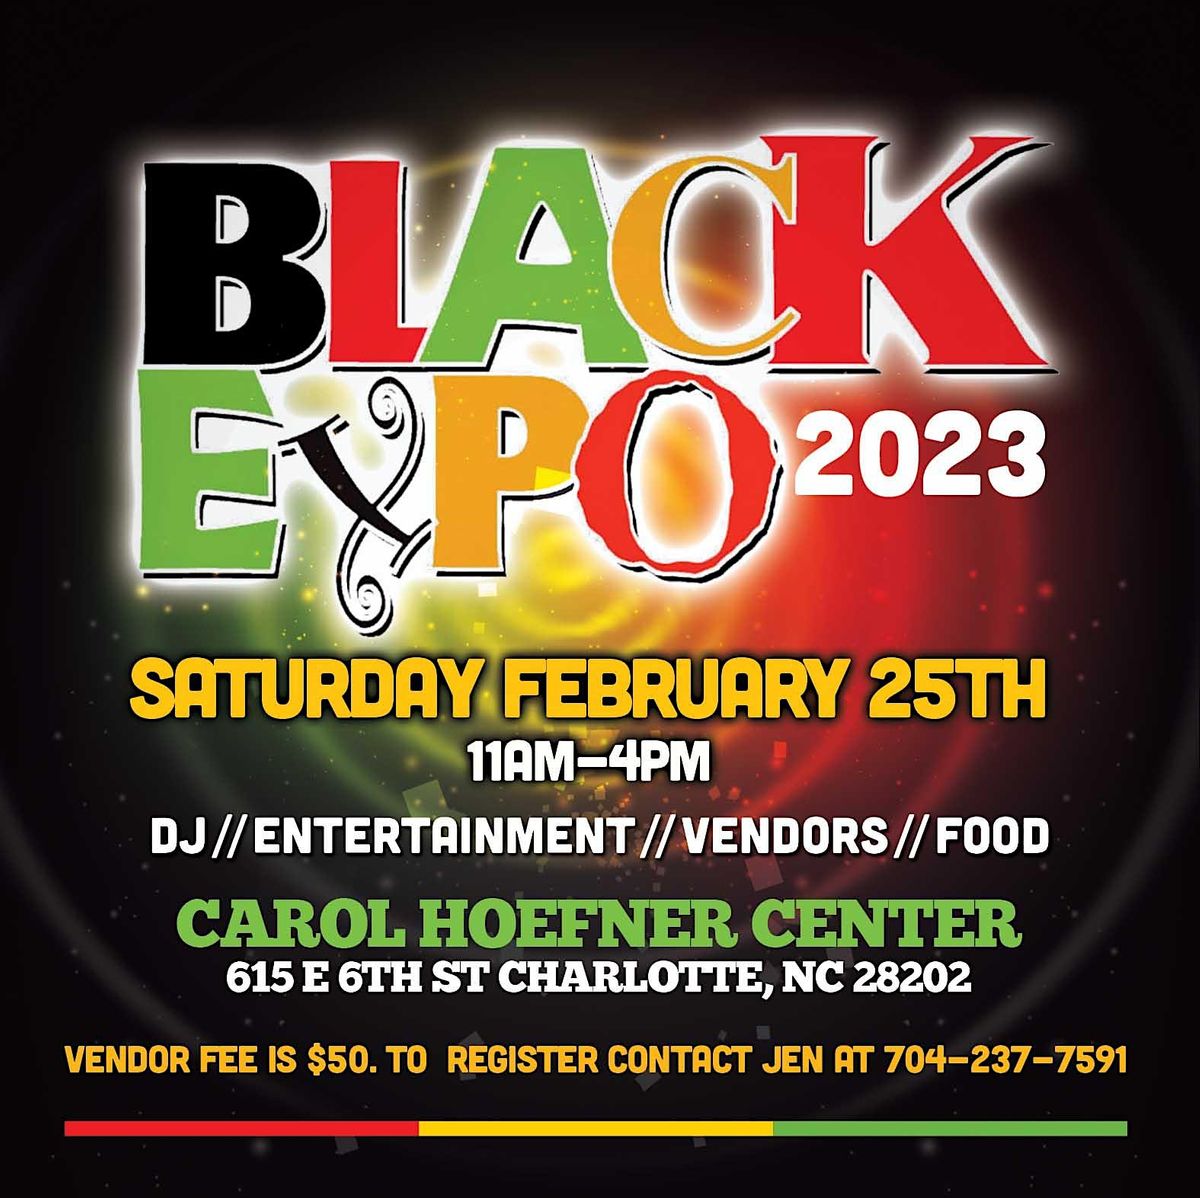 Black Expo 2023, 615 E 6th St, Charlotte, 1 April 2023